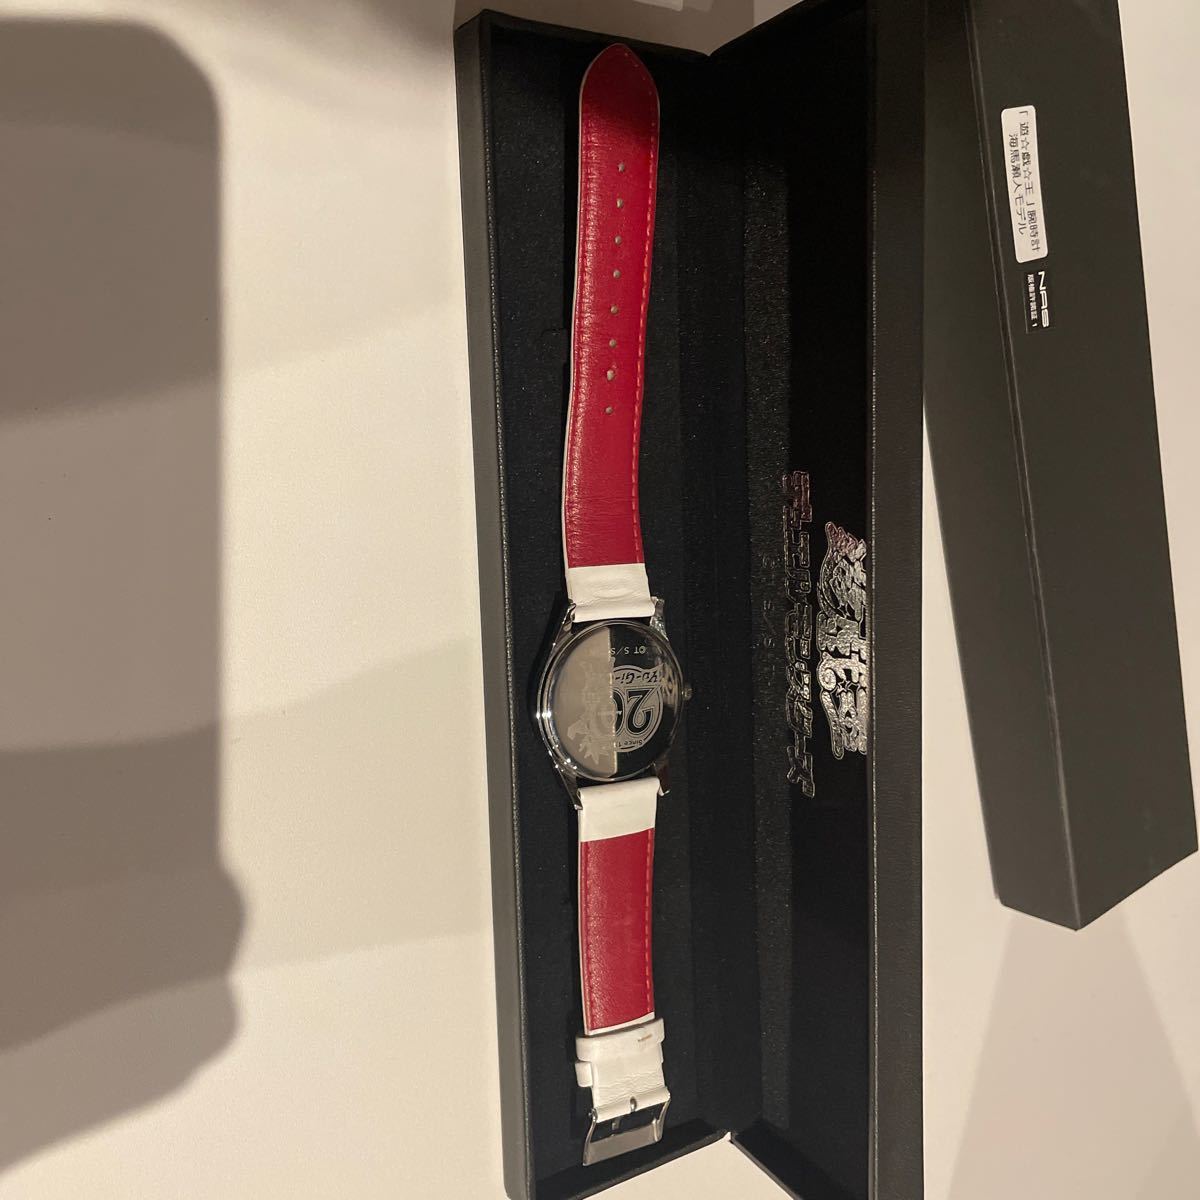 売れ筋ランキング 遊戯王 海馬瀬人モデル 腕時計 腕時計(アナログ)